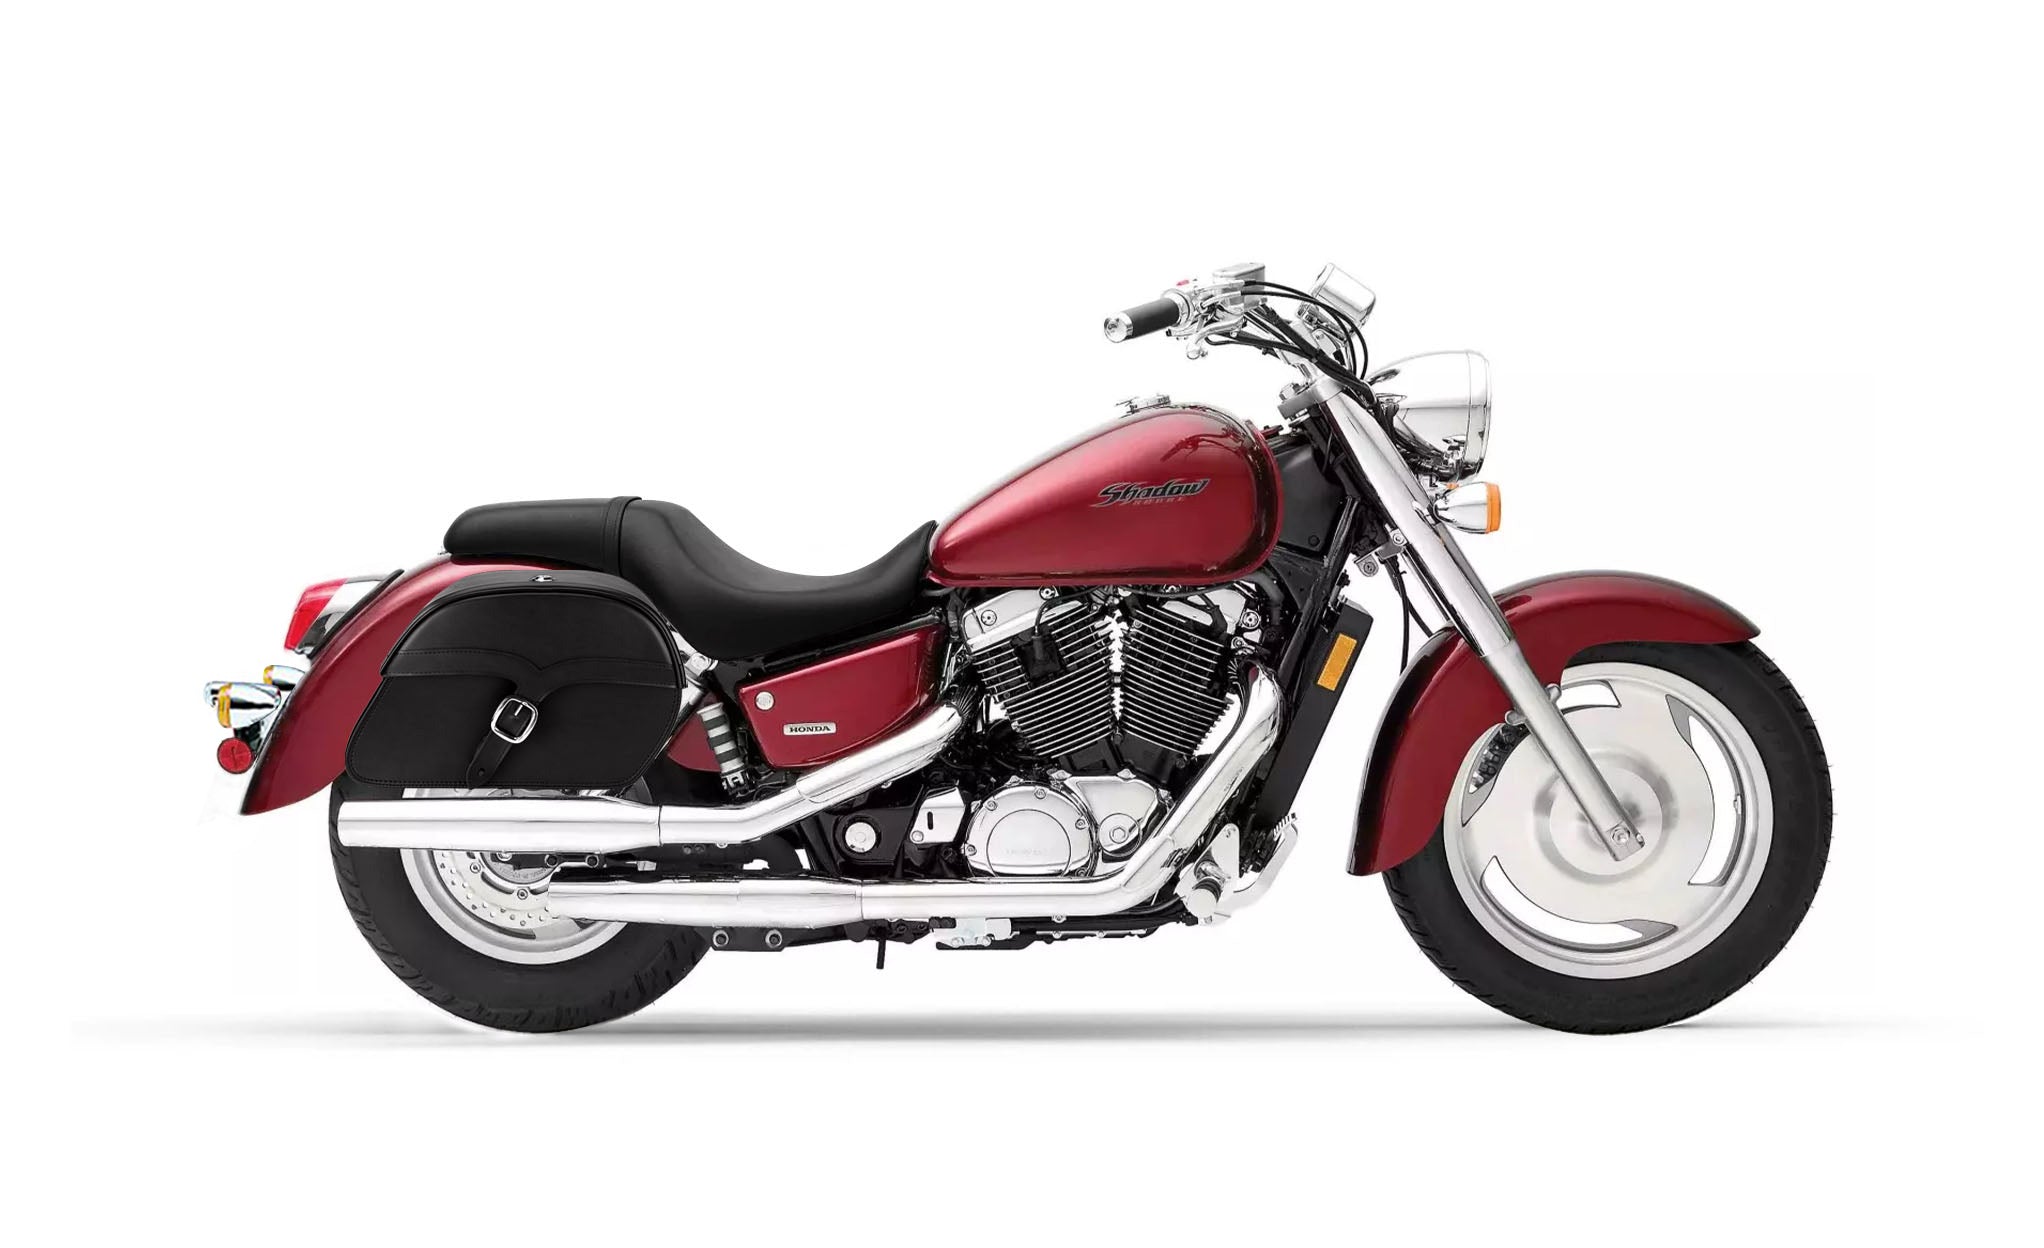 Viking Vintage Medium Honda Shadow 1100 Sabre Leather Motorcycle Saddlebags on Bike Photo @expand